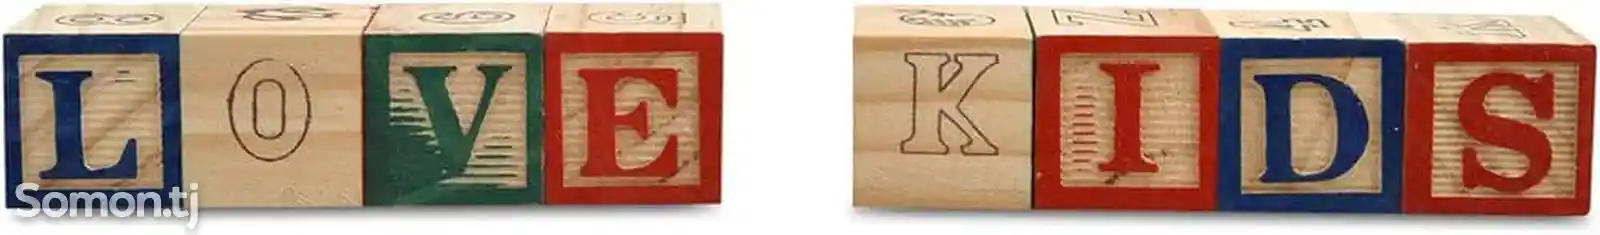 ABC Деревянные блоки. Кубики с буквами, рисунками и цифрами. 27-кубиков. 3,5х3,5-6